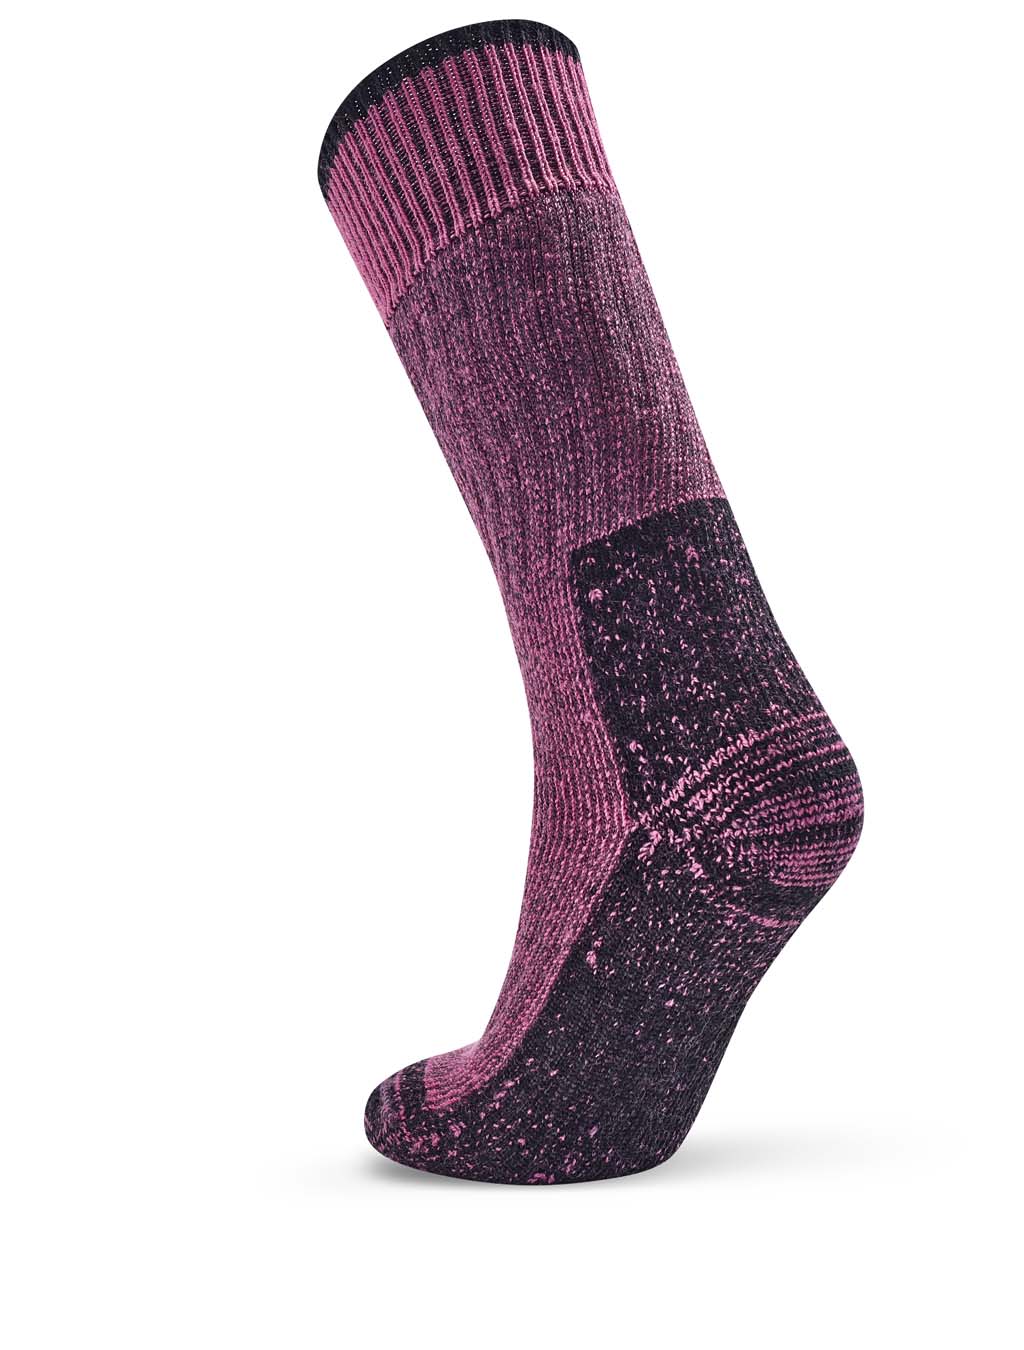 Gumboot Sock 3 Pack - Pink